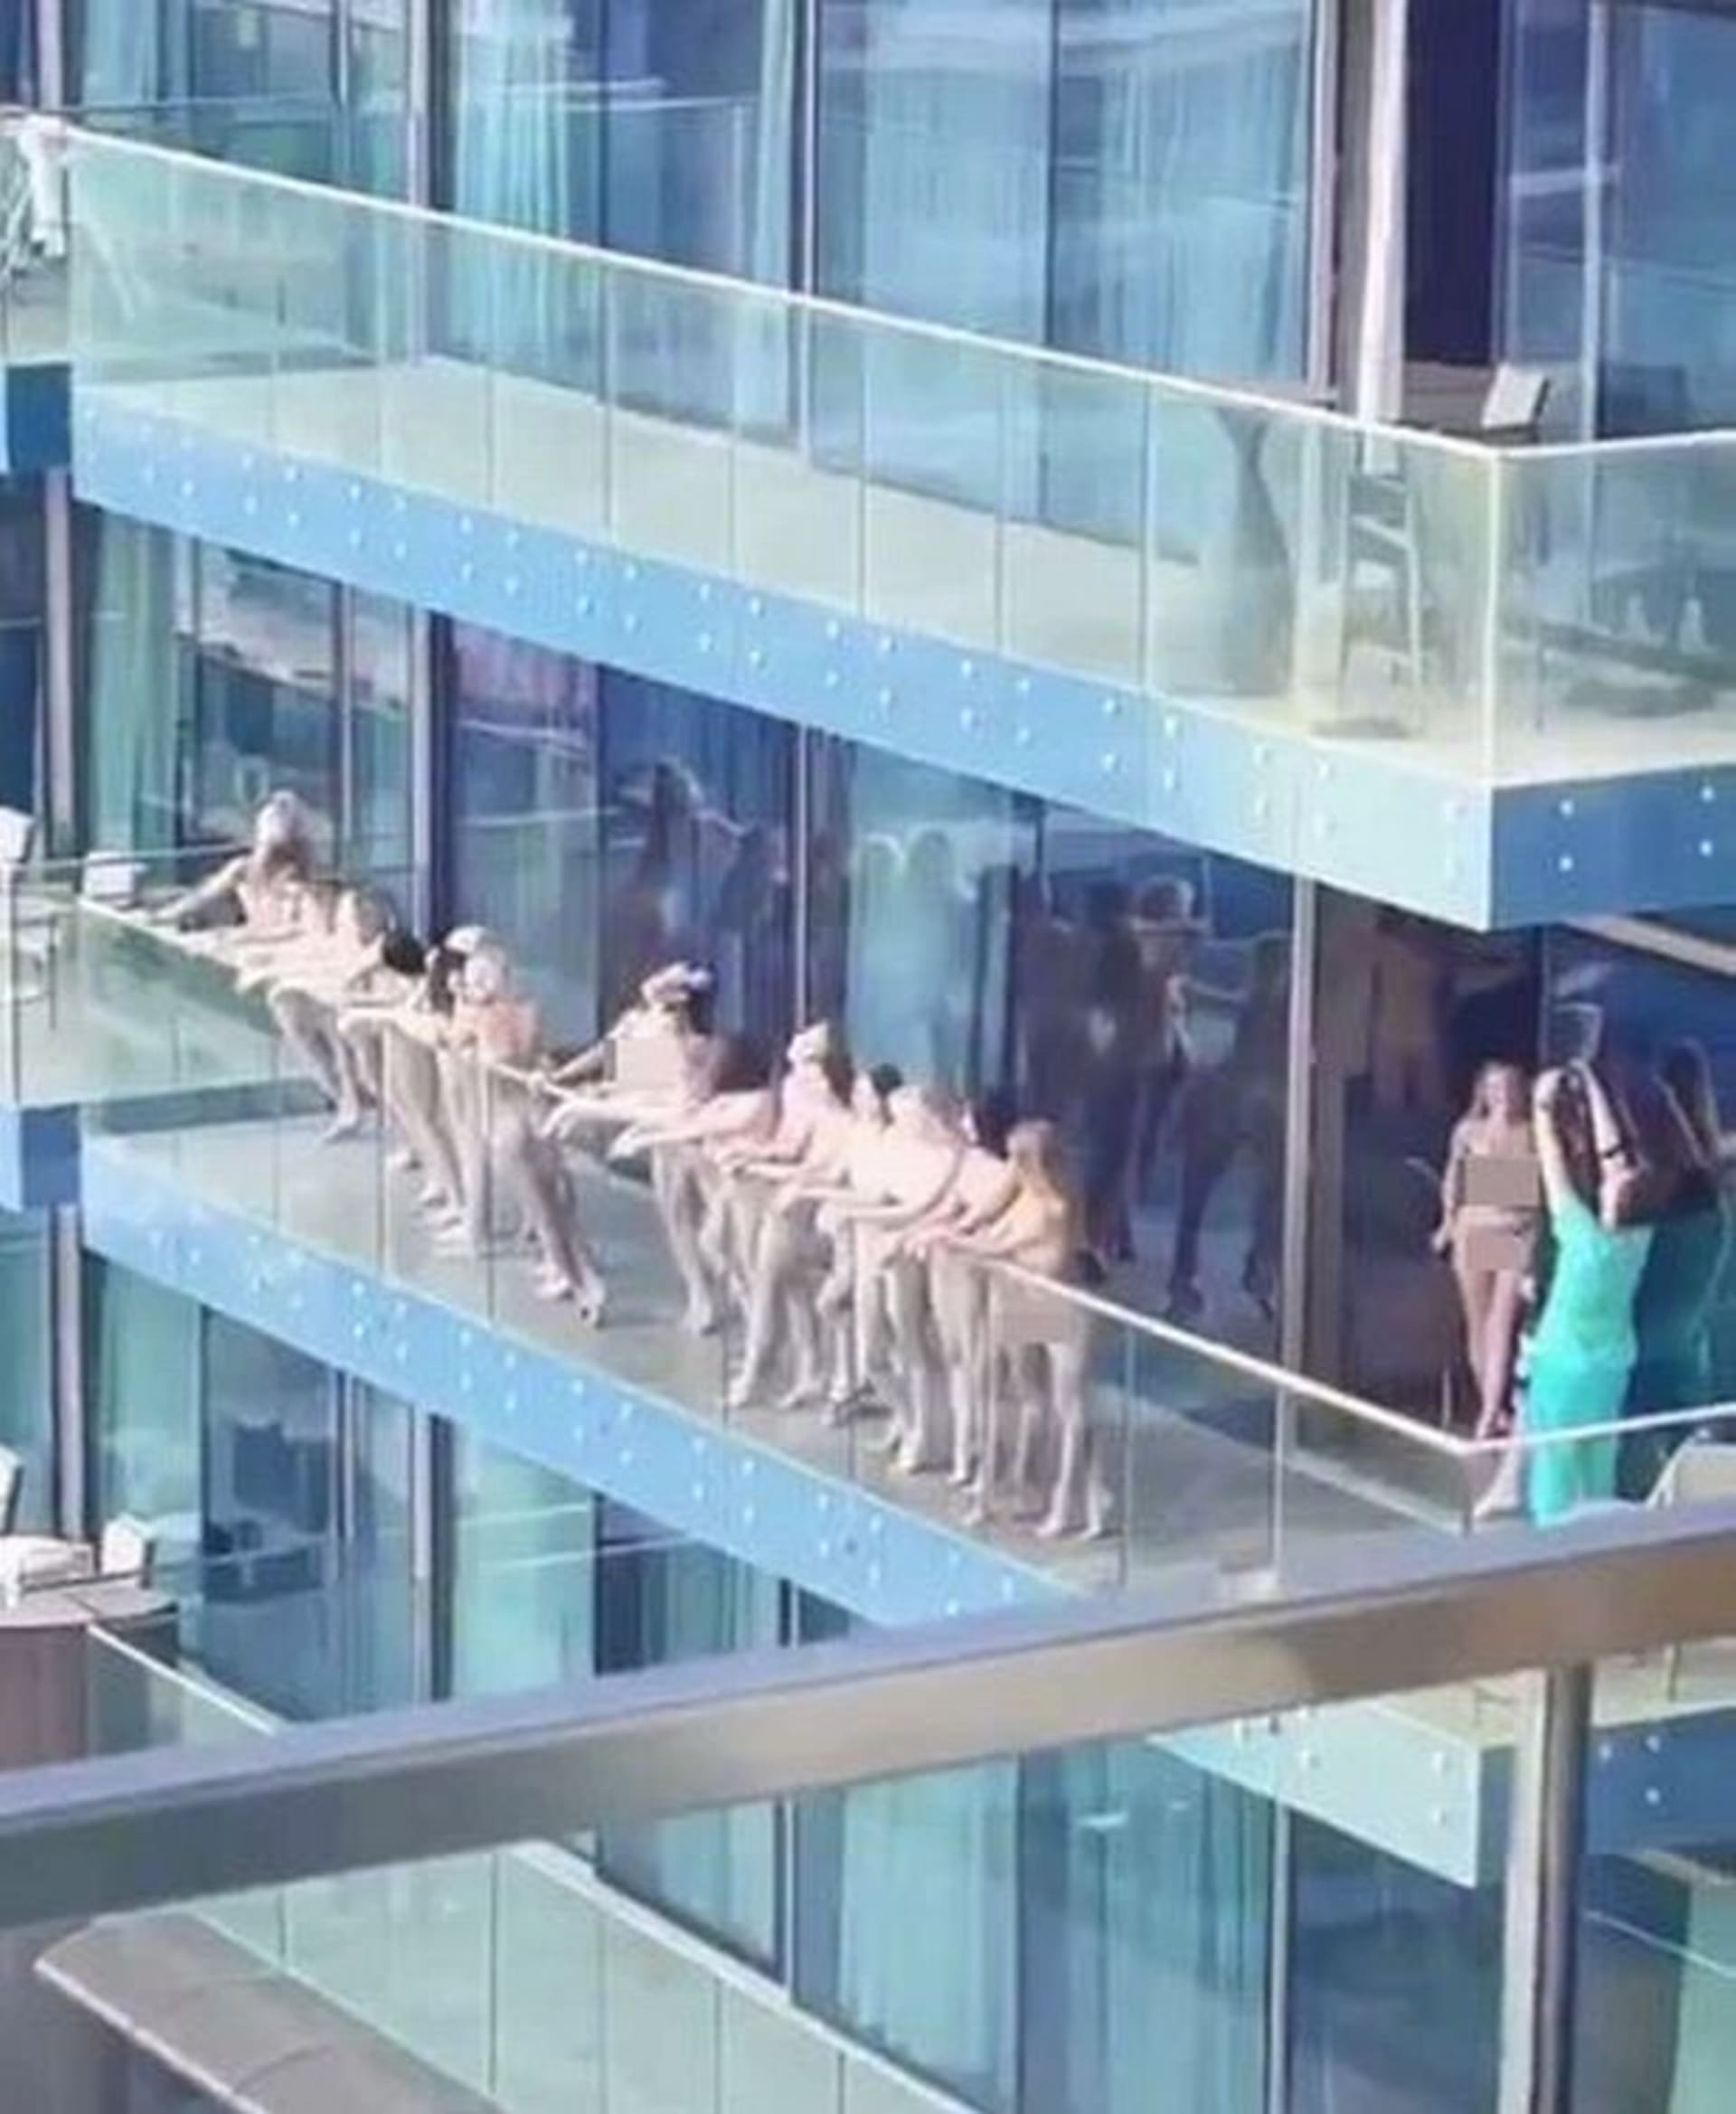 Pro nahé krásky na balkóně si přijela policie.